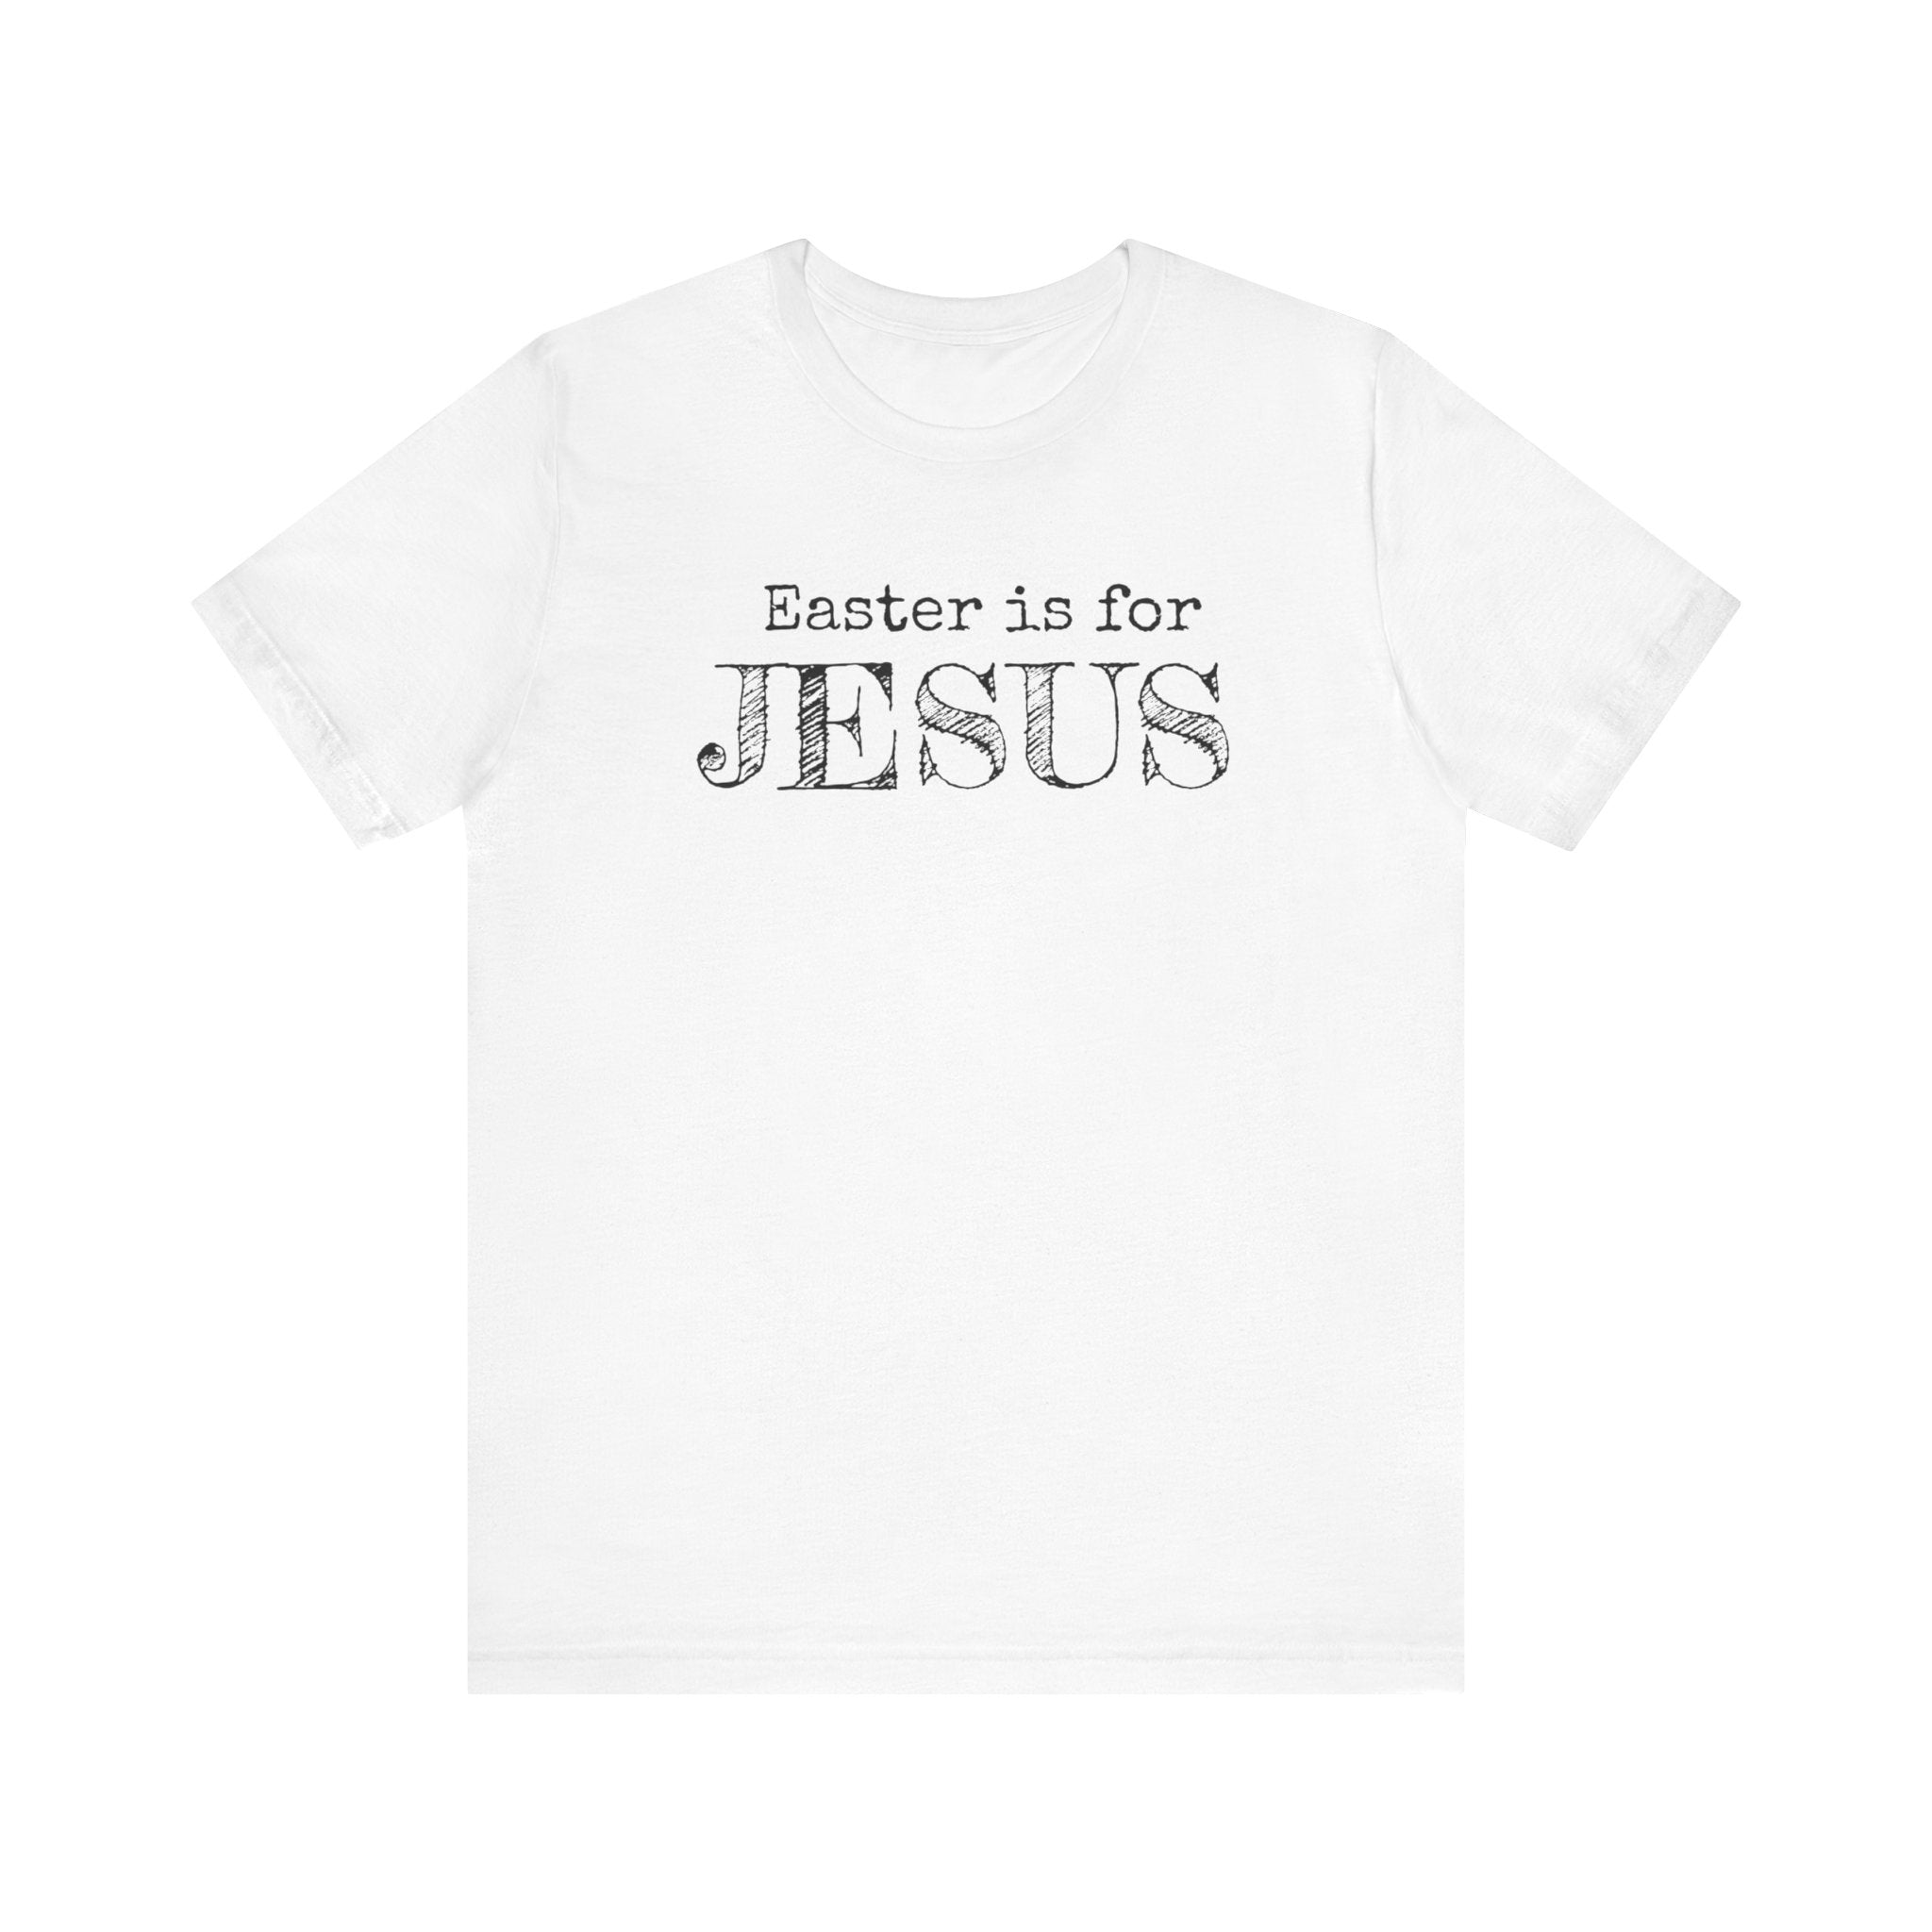 Jesus Easter Shirt, Shirt For Easter, Easter Gift, Easter Is For Jesus, Easter Day Shirt